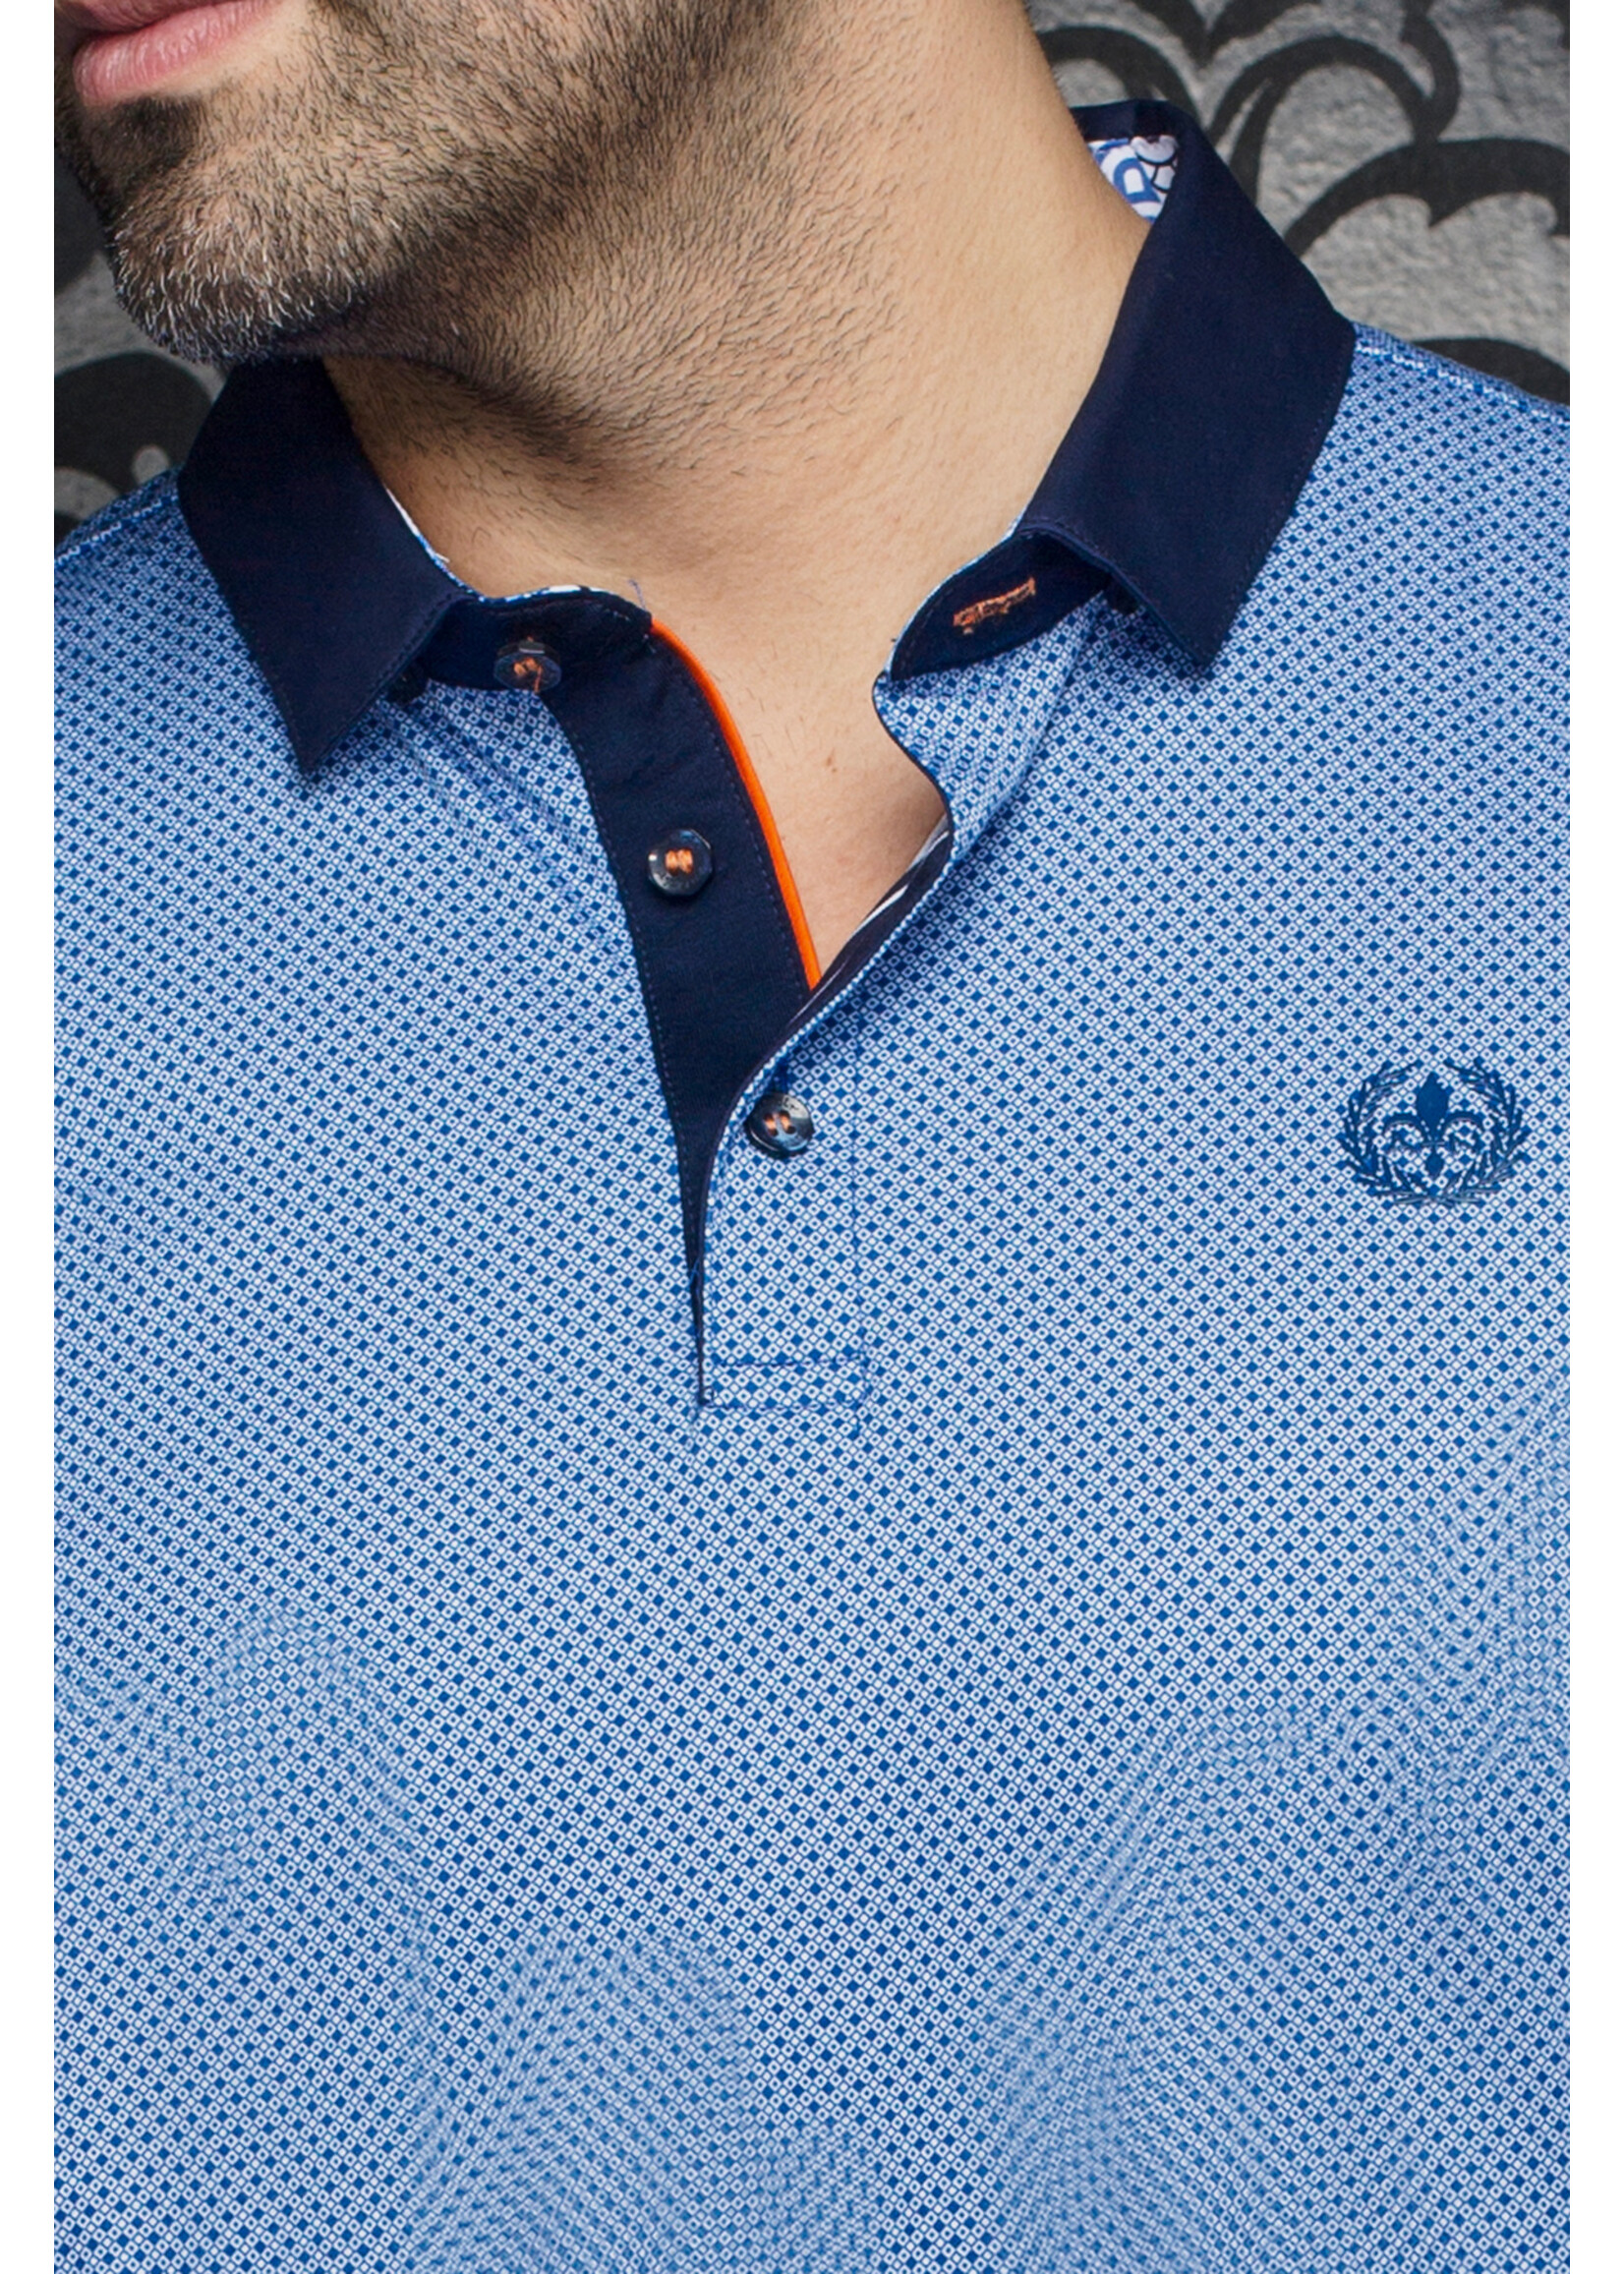 AU NOIR Men's casual polo shirt-LINDELL